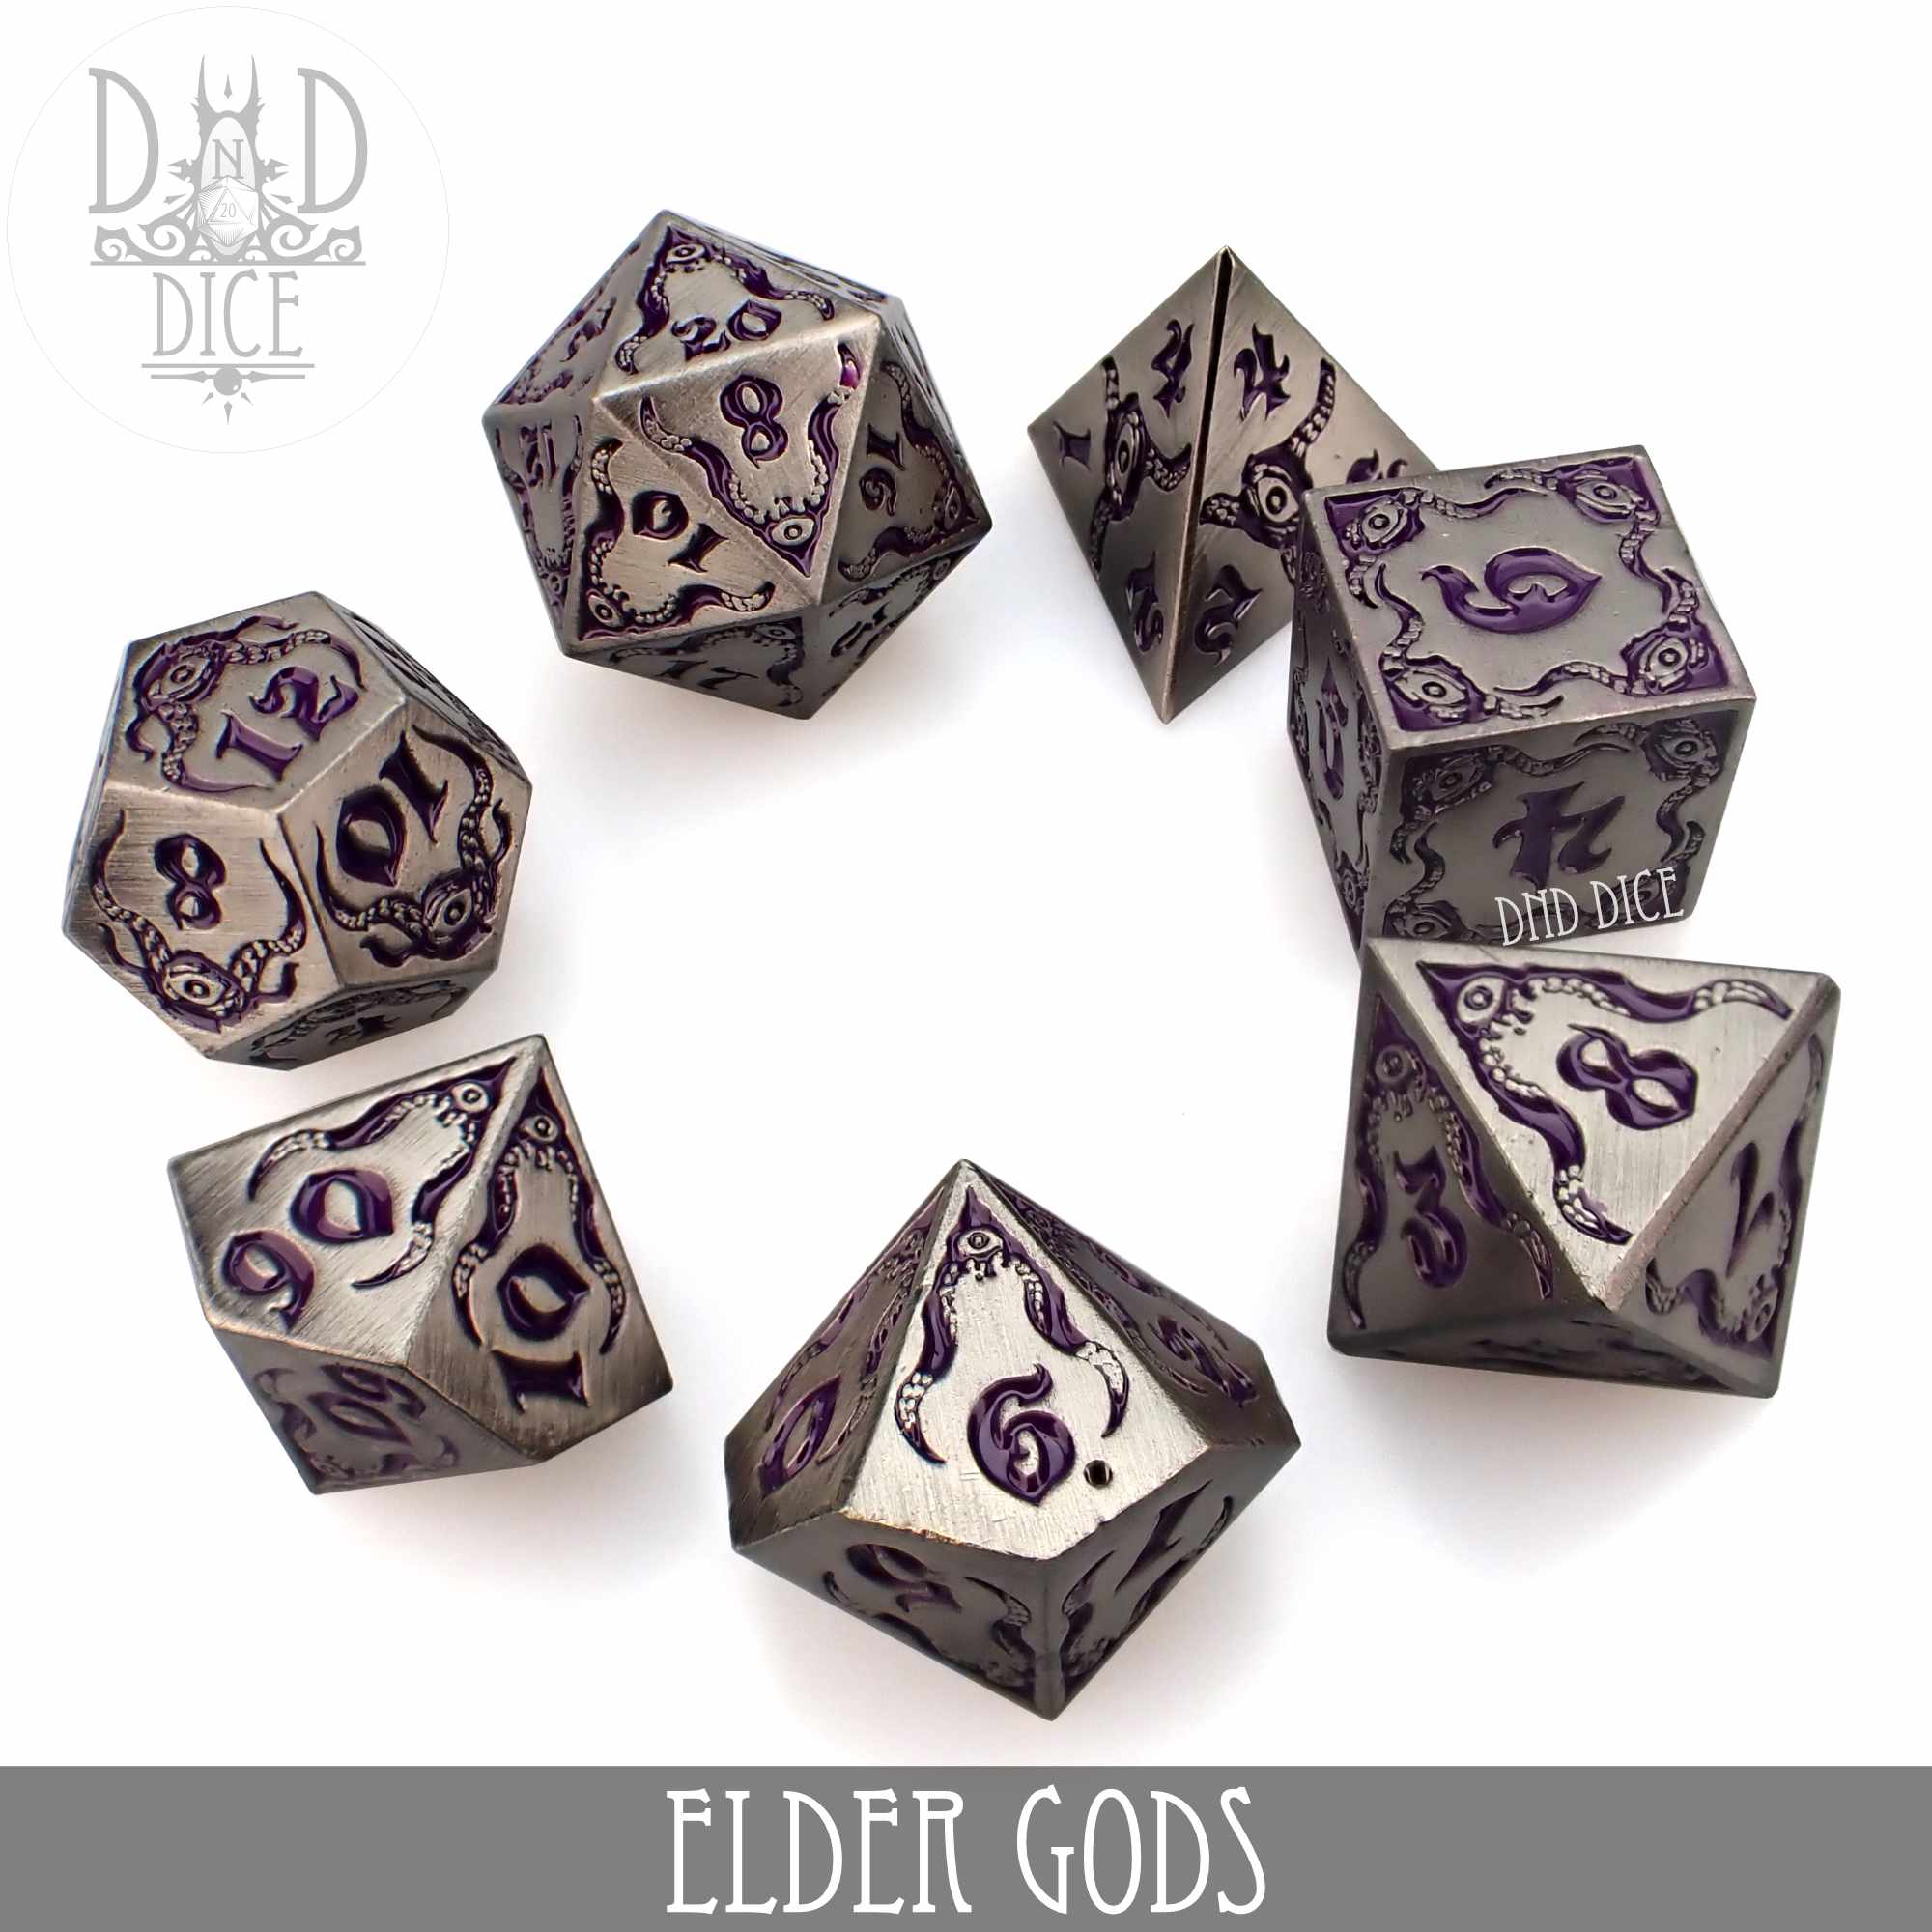 Elder Gods Metal Dice Set